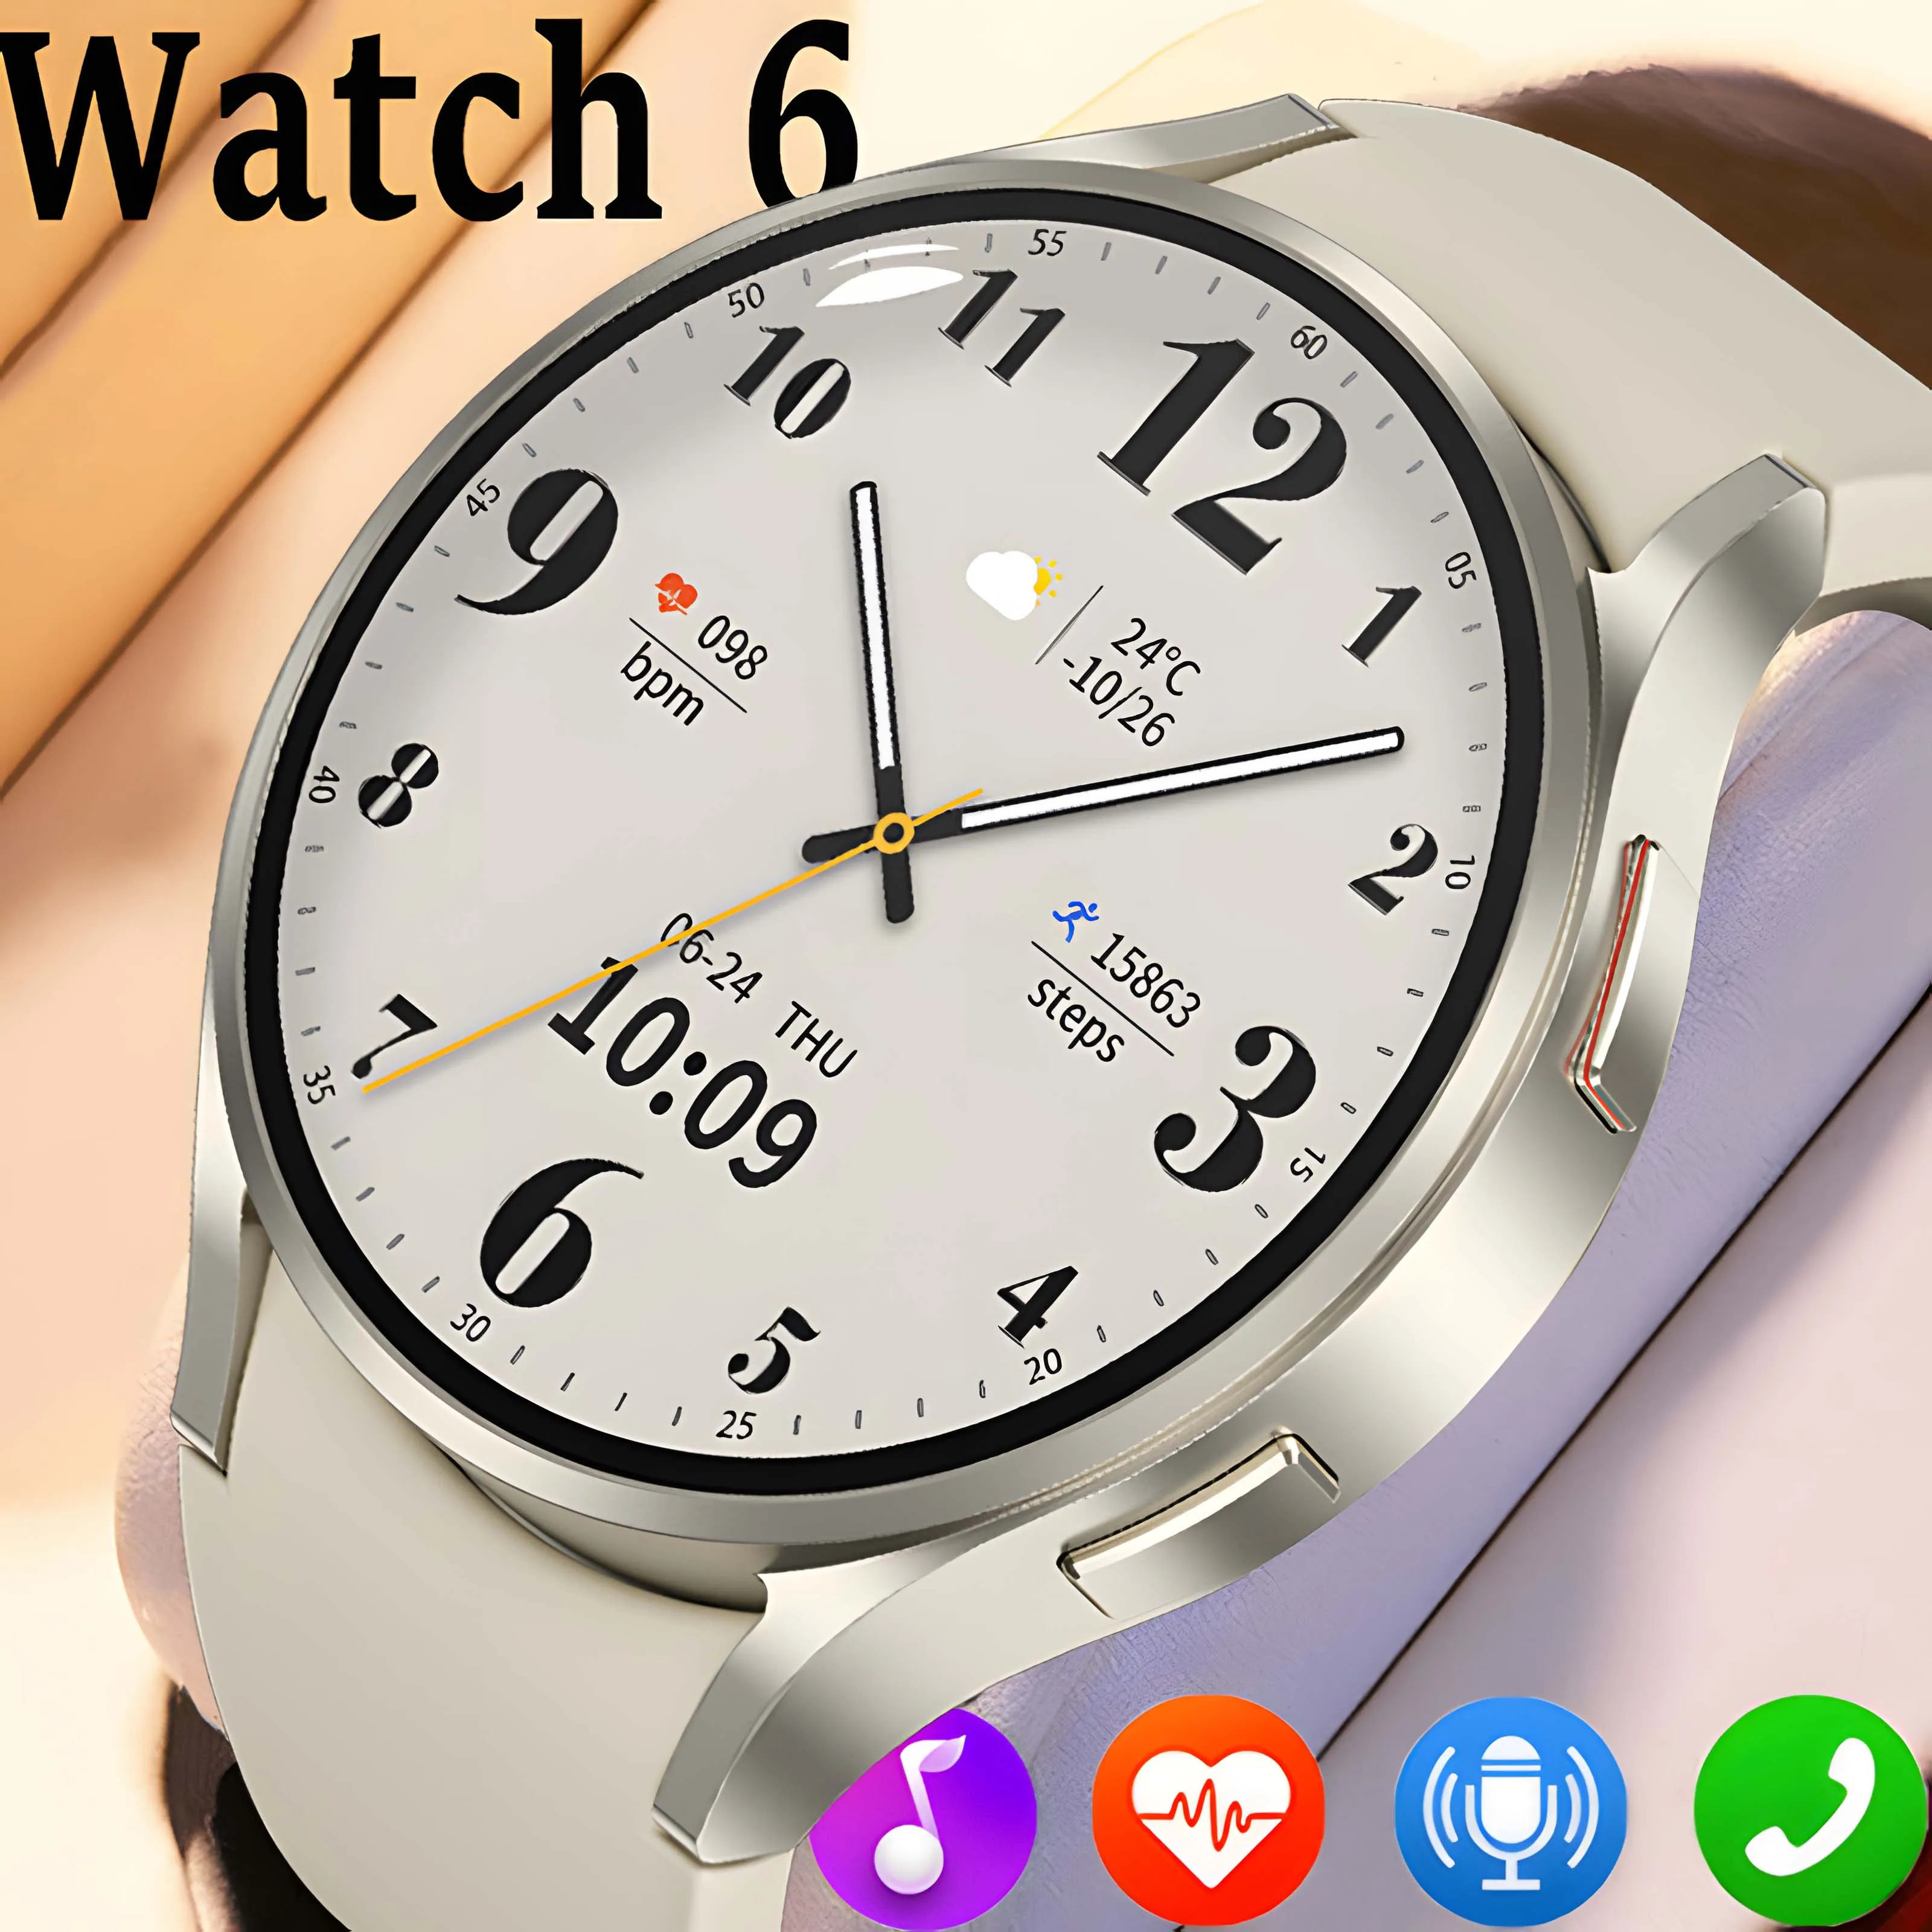 

Новинка, часы Galaxy 6, классические умные часы, мужские часы с индивидуальным циферблатом, голосовыми вызовами, спортивные часы, женские умные часы с GPS-трекером для Android и iOS